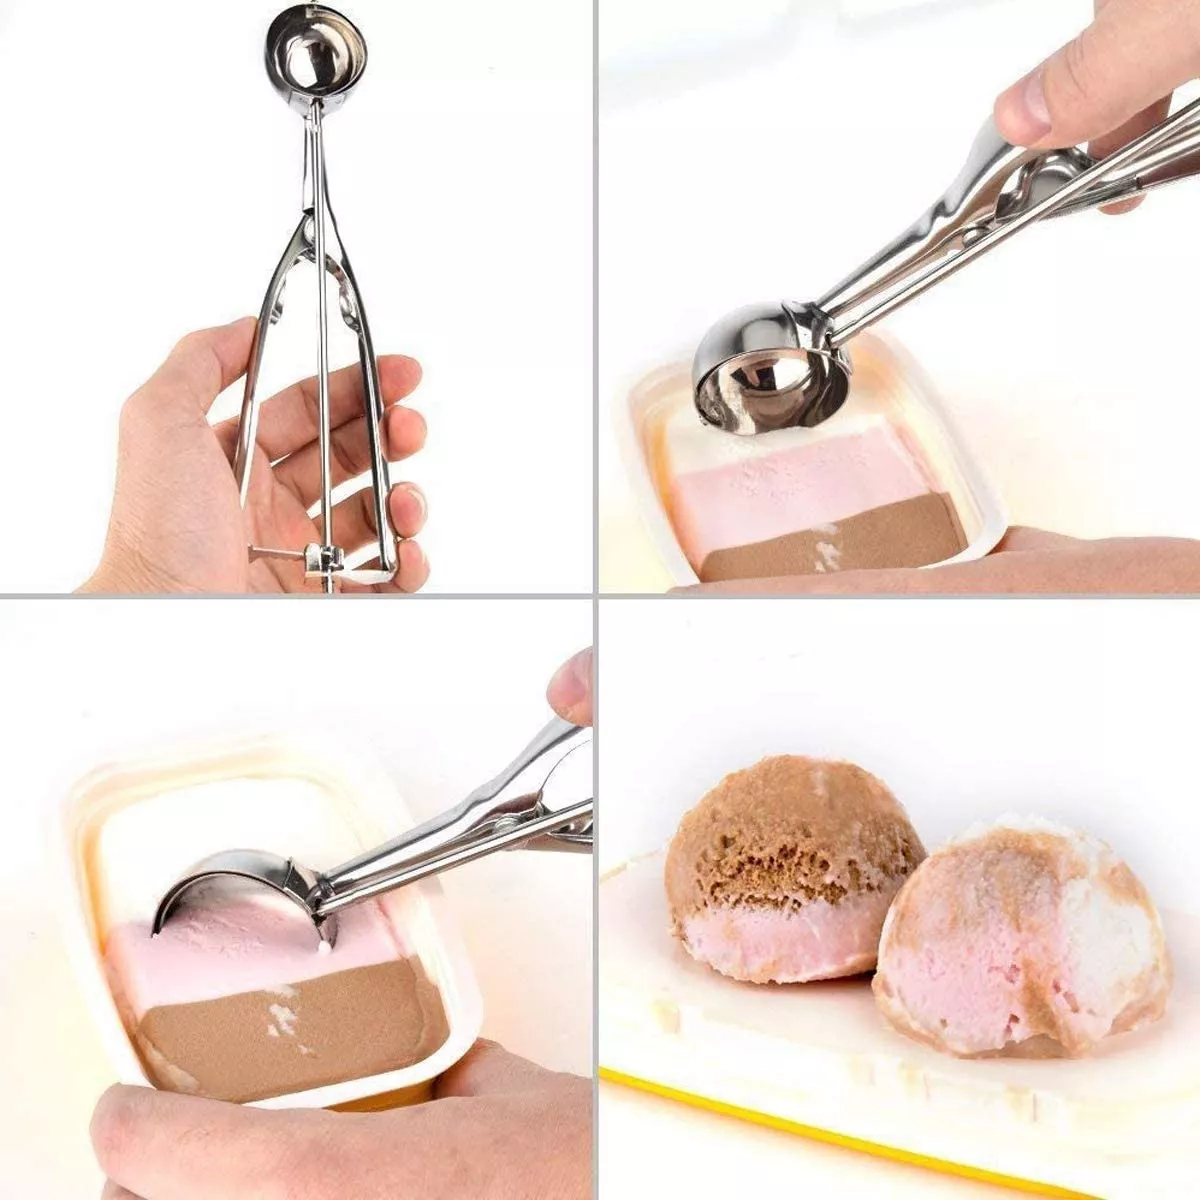 Segunda imagen para búsqueda de cuchara para helado